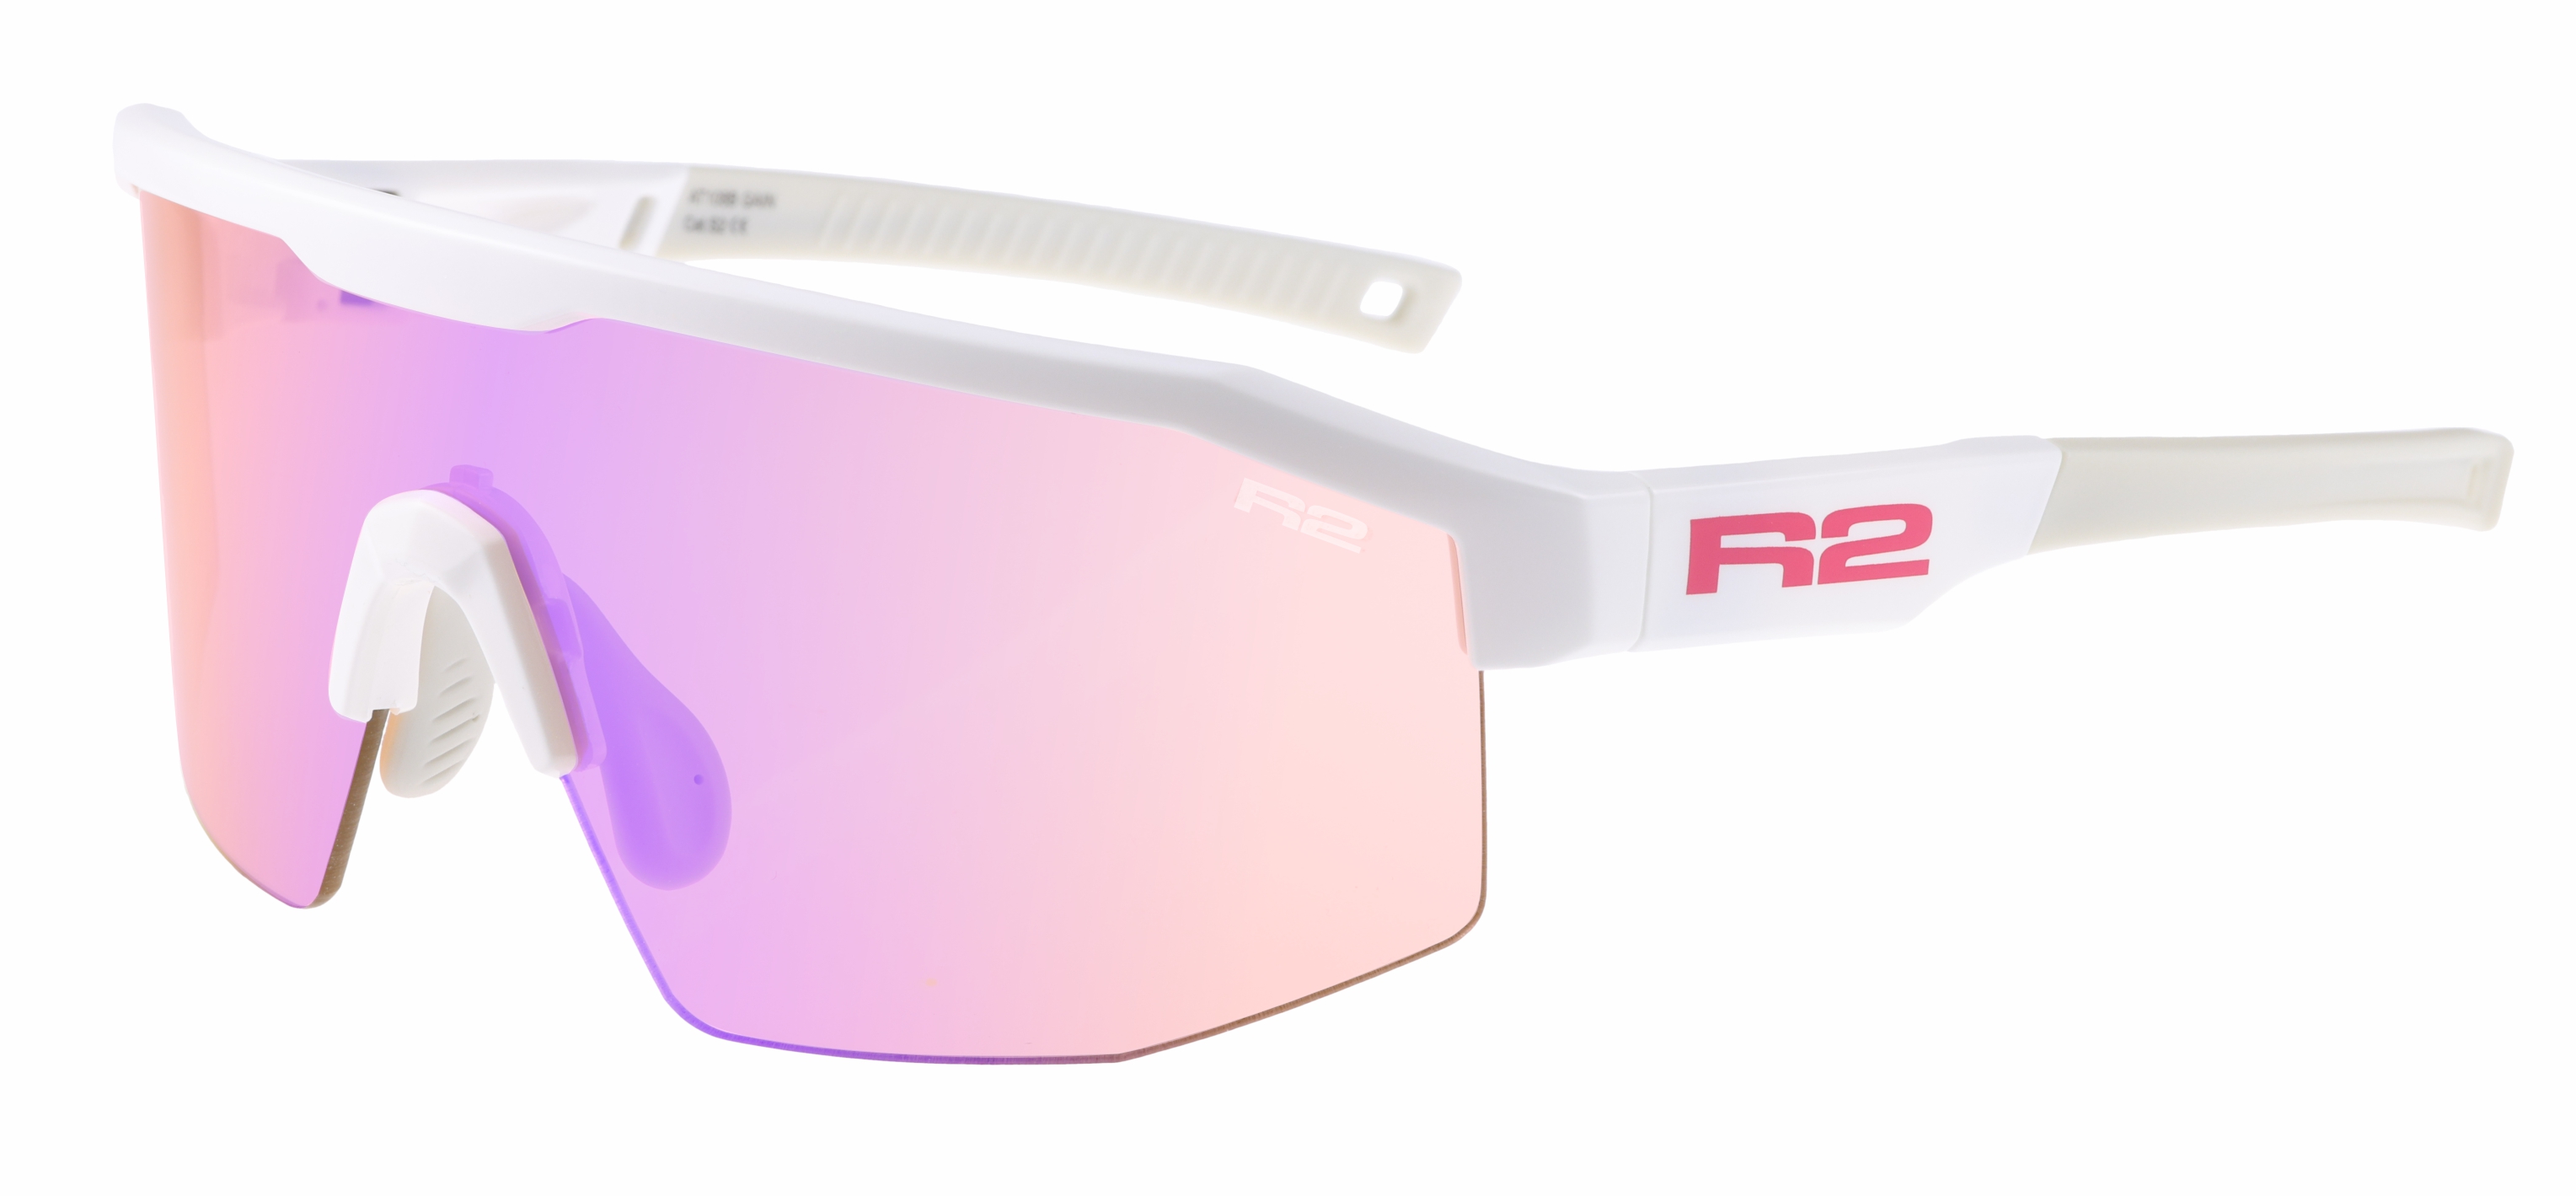 HD sport sunglasses R2 GAIN AT108B standard